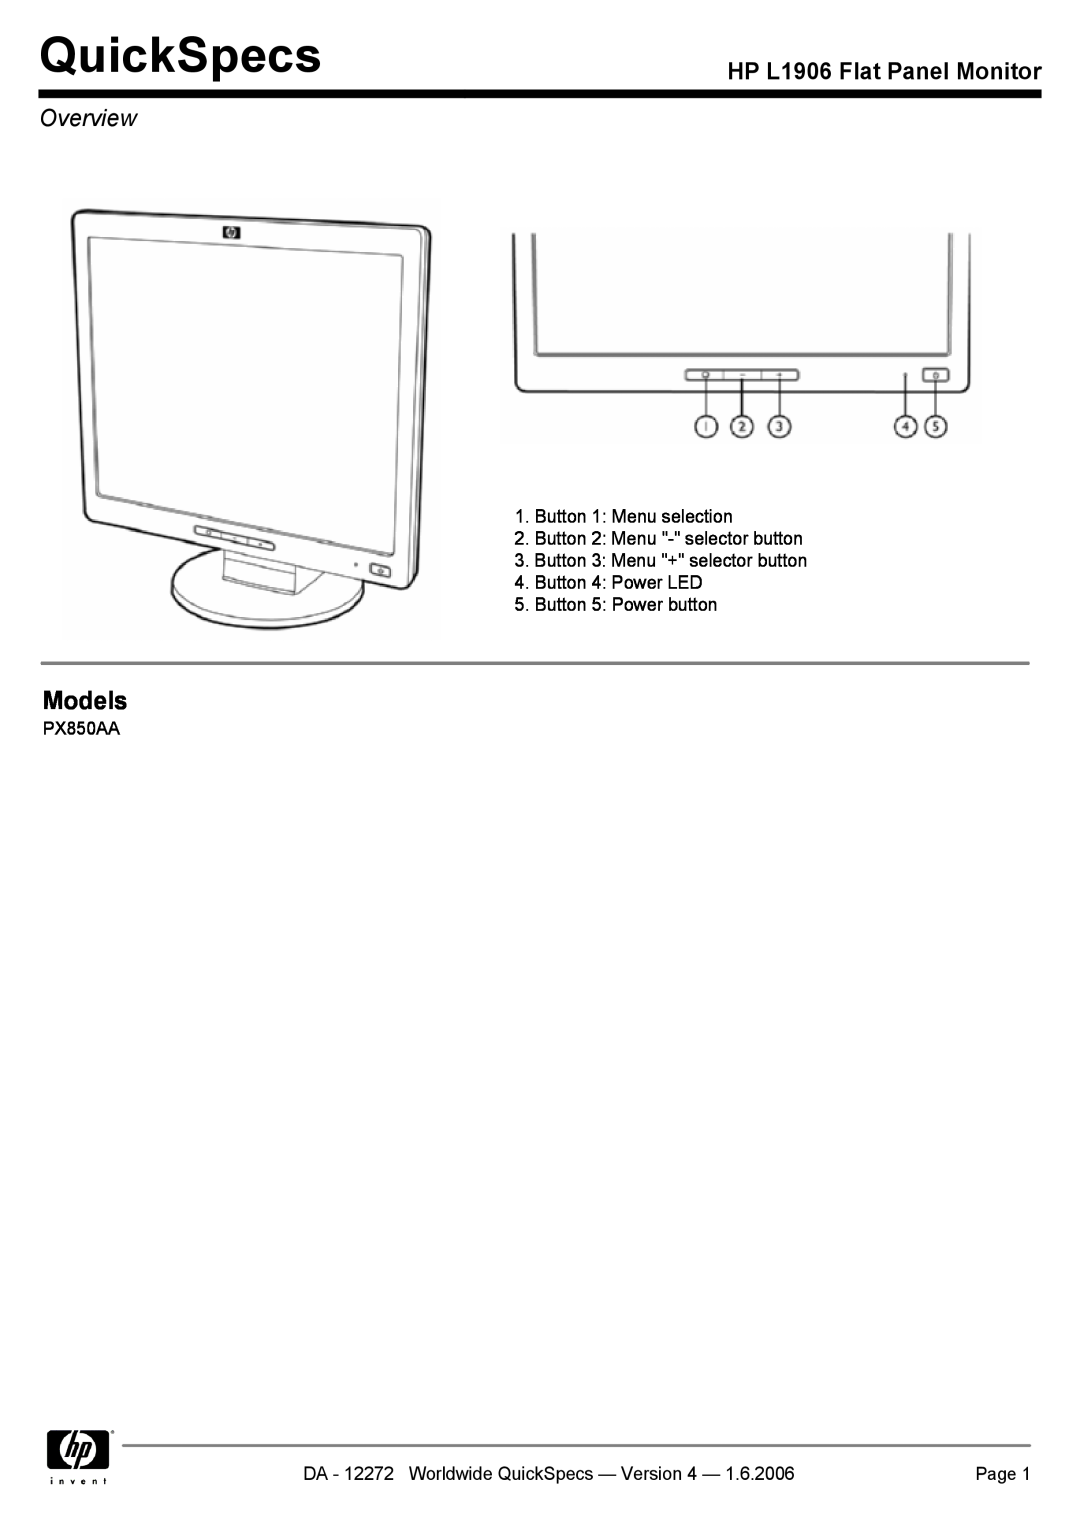 Compaq PX850AA manual QuickSpecs, HP L1906 Flat Panel Monitor, Overview, Models 